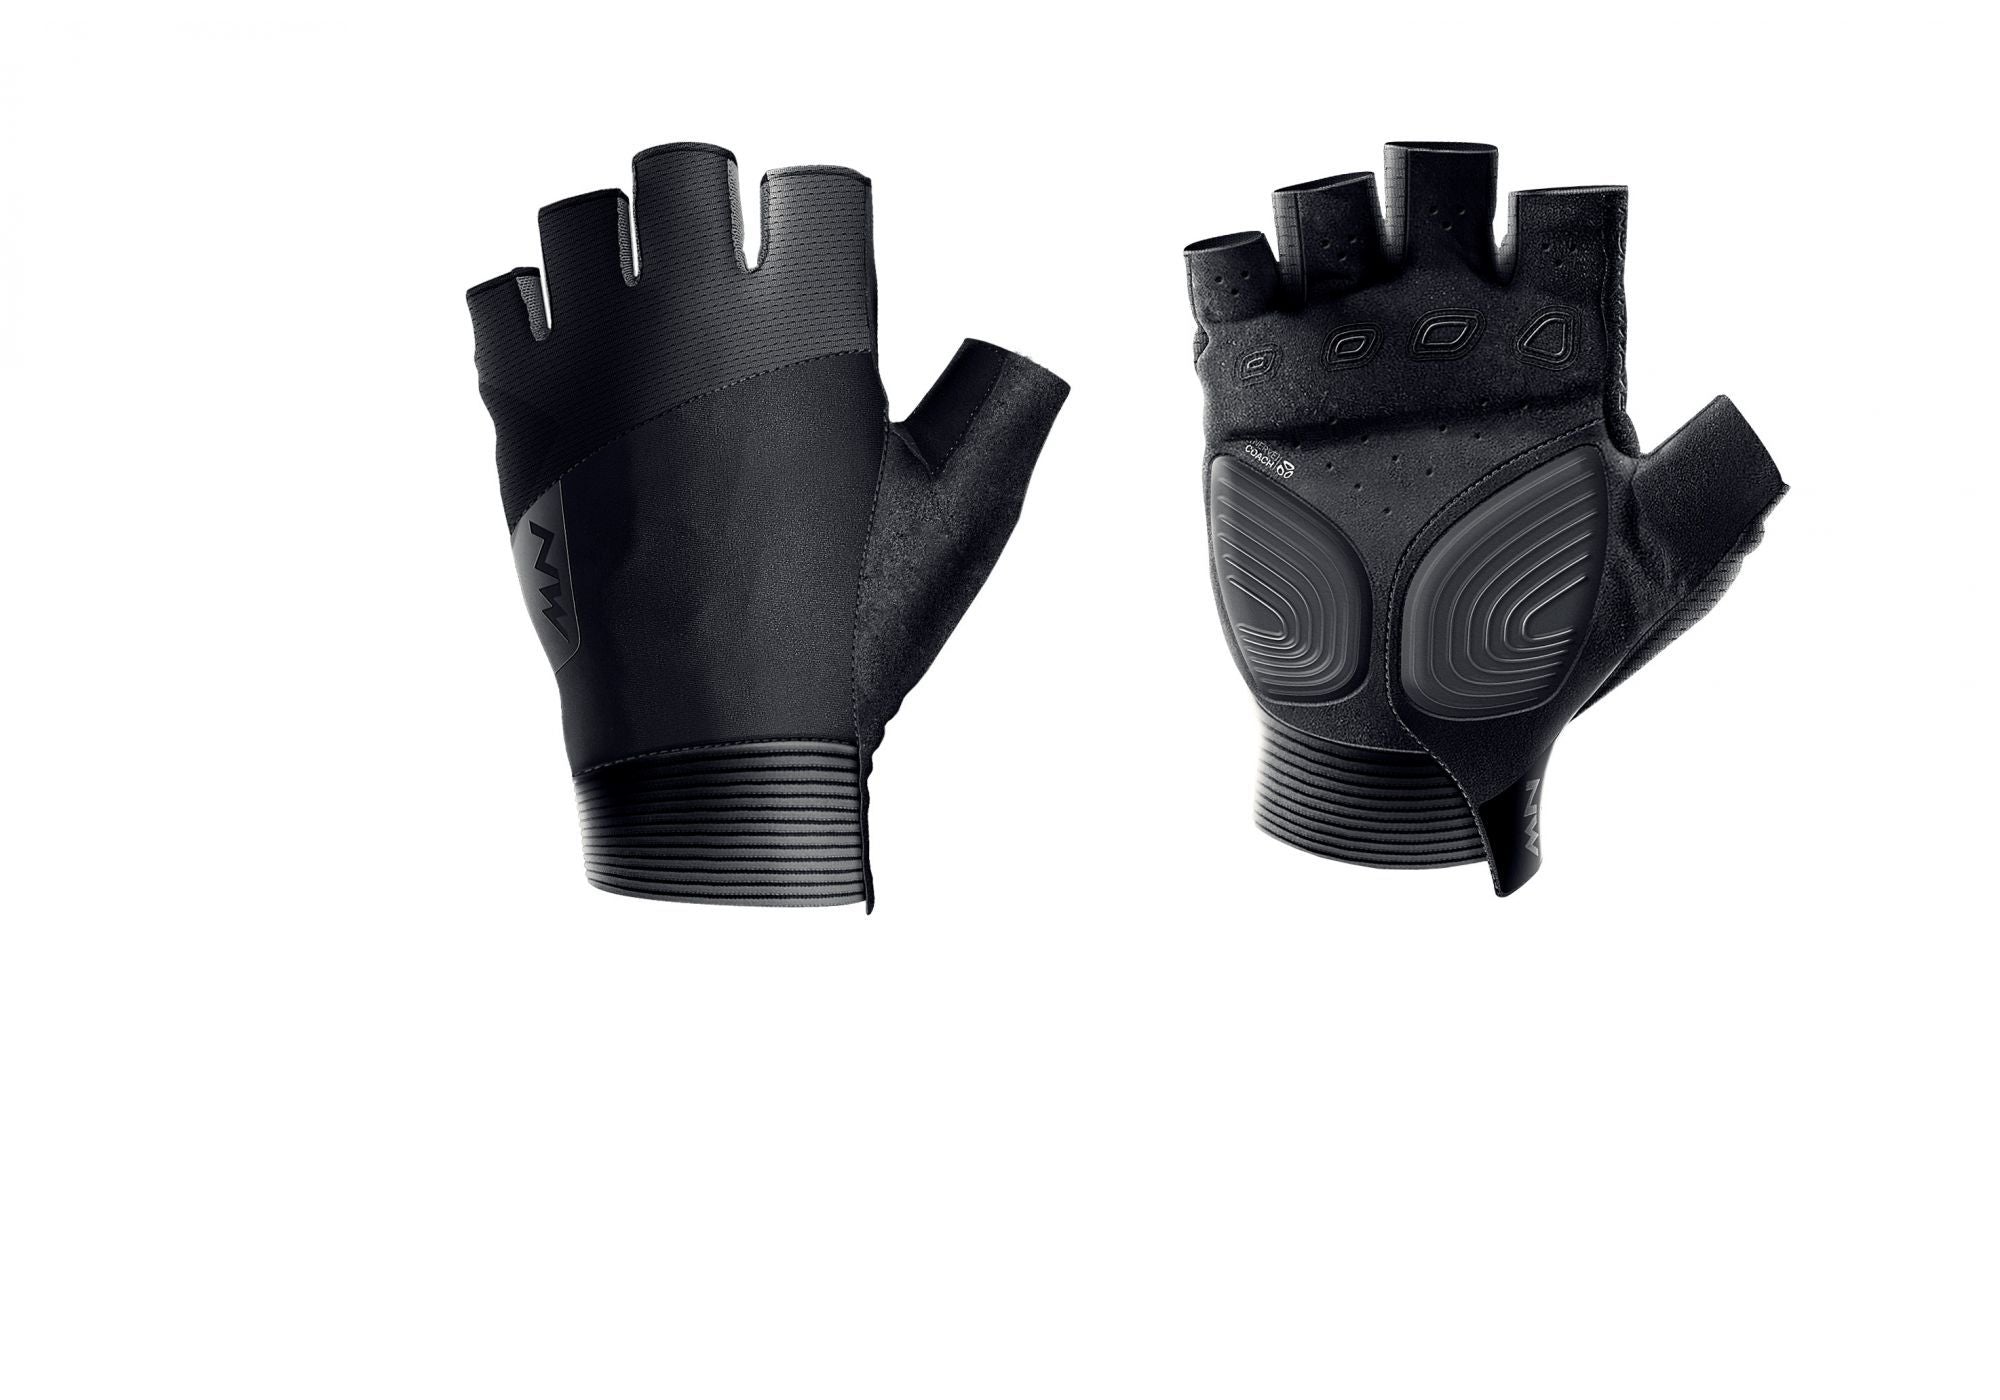 Northwave Extreme Pro Short Finger Glove